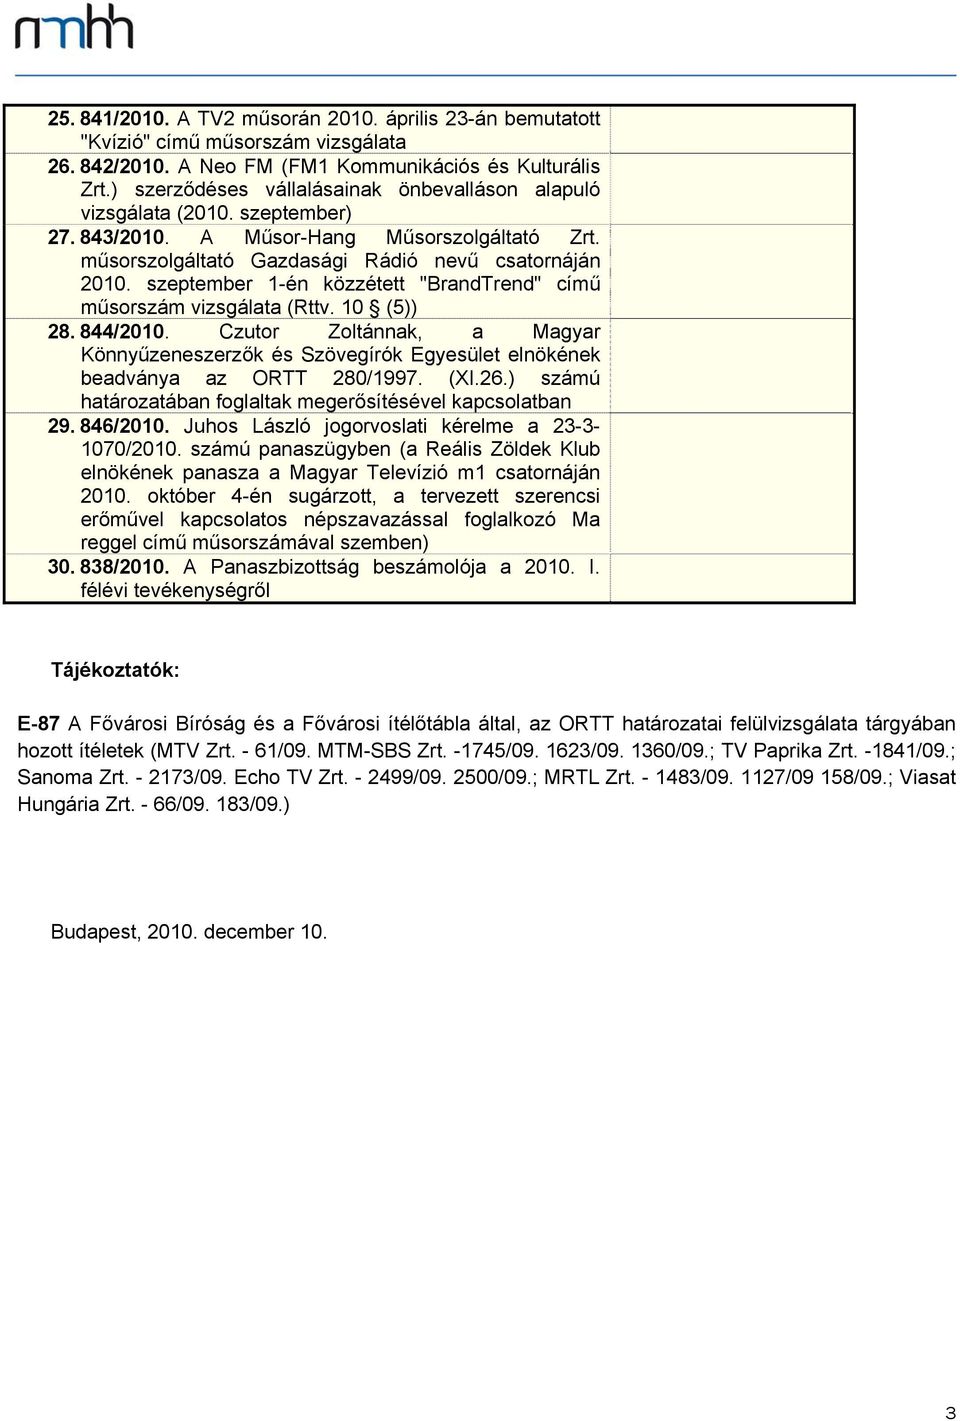 szeptember 1-én közzétett "BrandTrend" című műsorszám vizsgálata (Rttv. 10 (5)) 28. 844/2010. Czutor Zoltánnak, a Magyar Könnyűzeneszerzők és Szövegírók Egyesület elnökének beadványa az ORTT 280/1997.